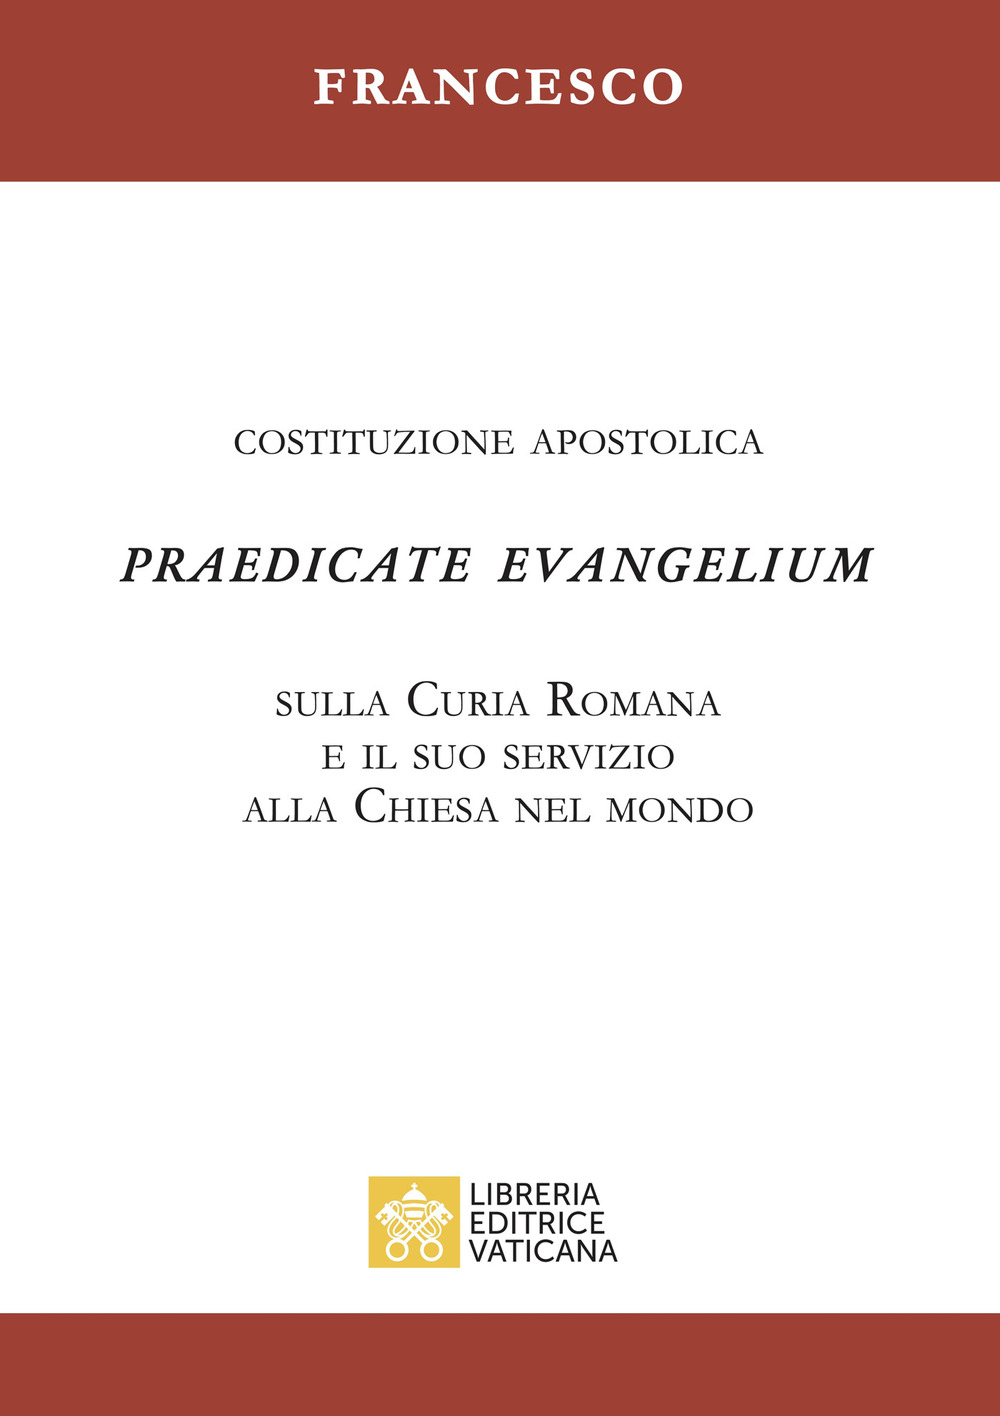 Praedicate evangelium. Costituzione apostolica sulla curia romana e il suo servizio alla chiesa nel mondo